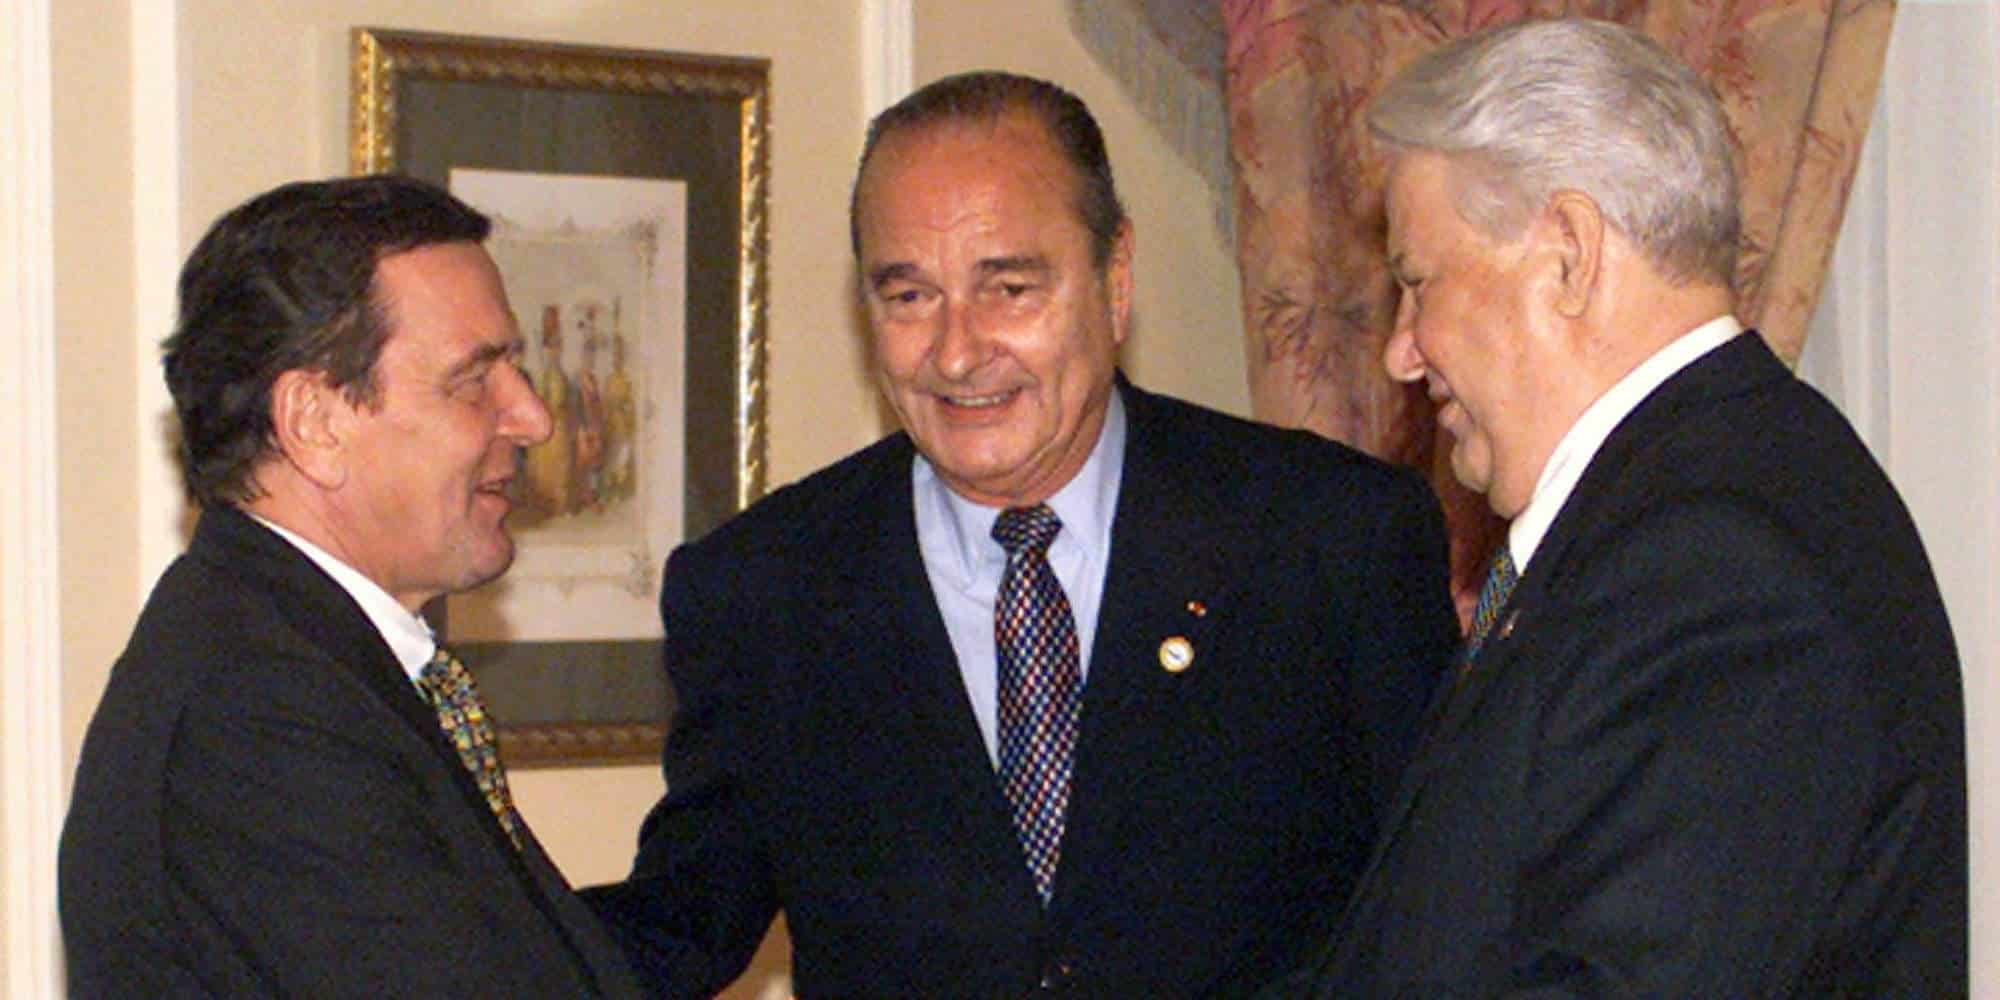 Ο Γκέρχαρντ Σρέντερ (αριστερά) με τον τότε πρόεδρο της Γαλλίας, Ζακ Σιράκ (κέντρο) και τον πρώην Ρώσο πρόεδρο, Μπόρις Γιέλτσιν